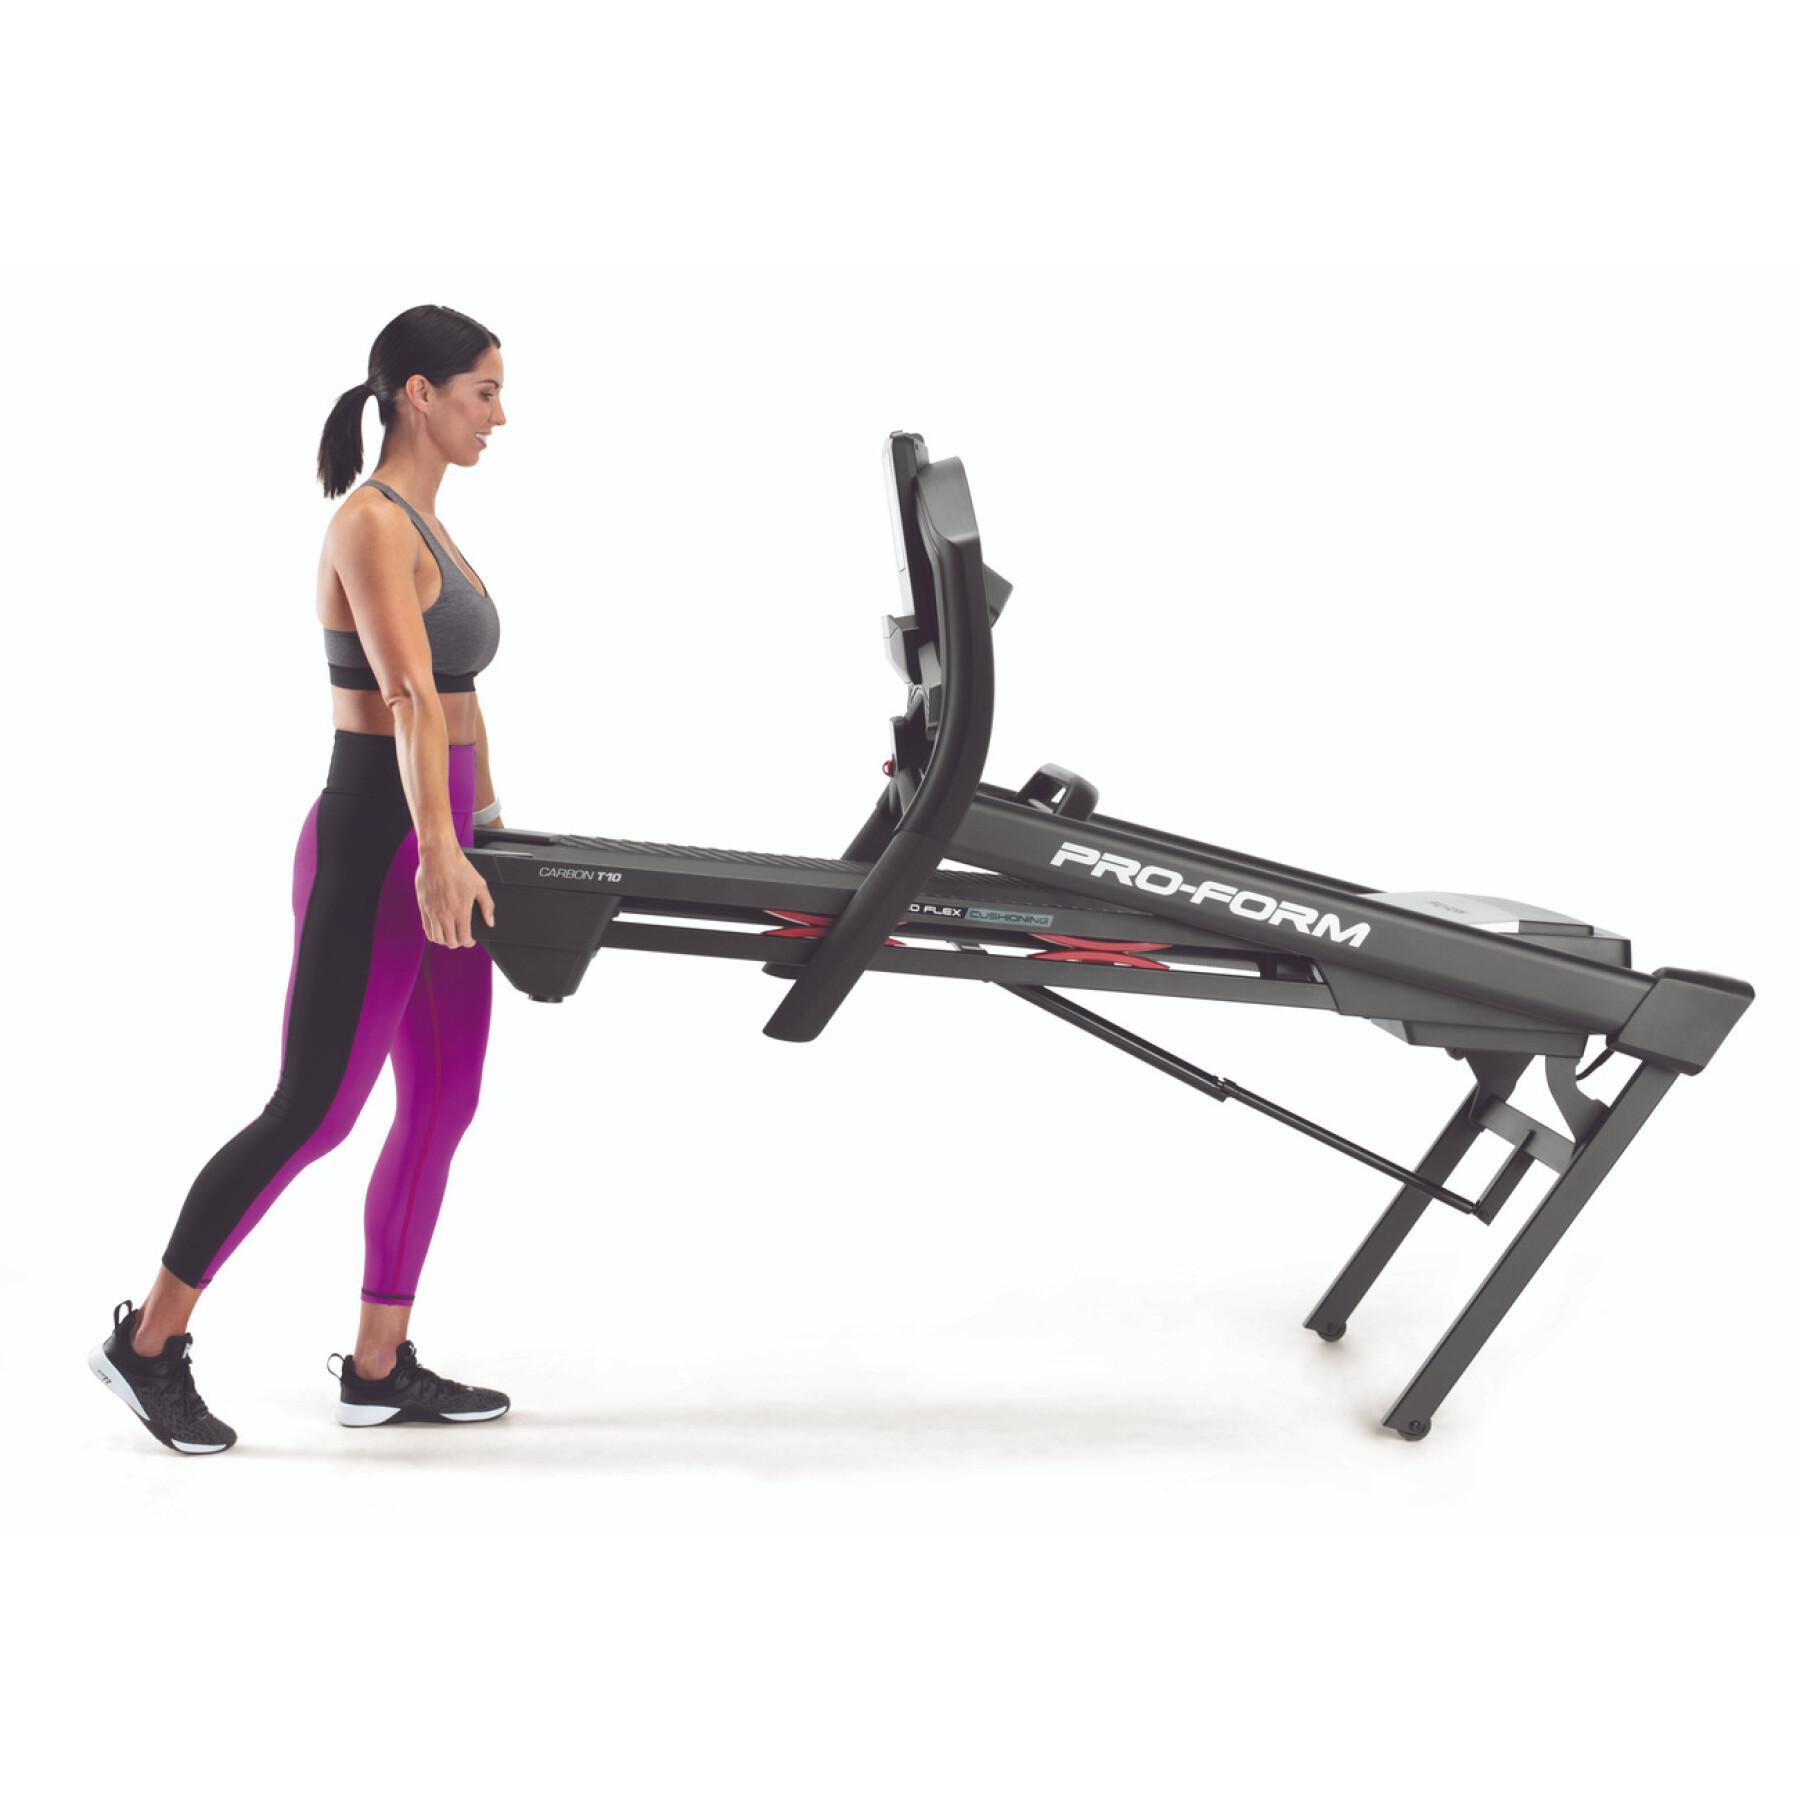 Treadmill ProForm Carbon T10